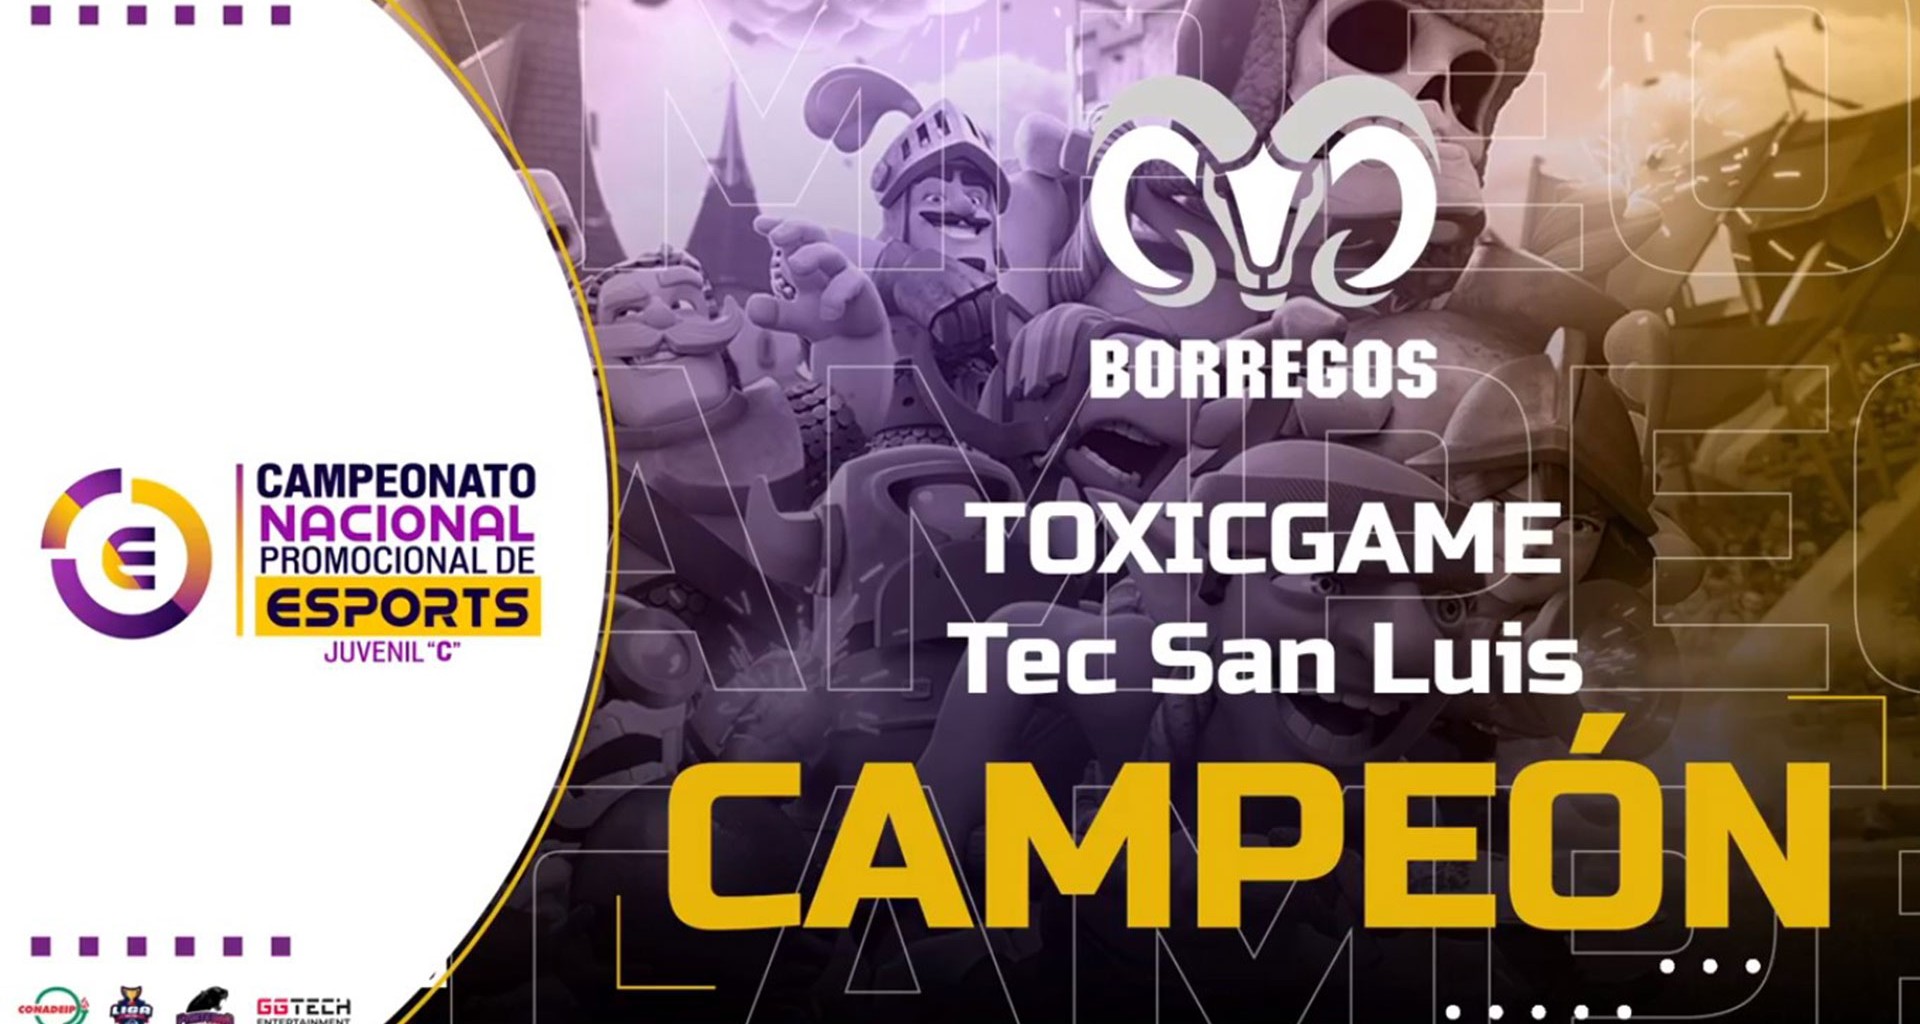 Santiago, conocido como Toxicgame en Clash Royale es nombrado Campeón